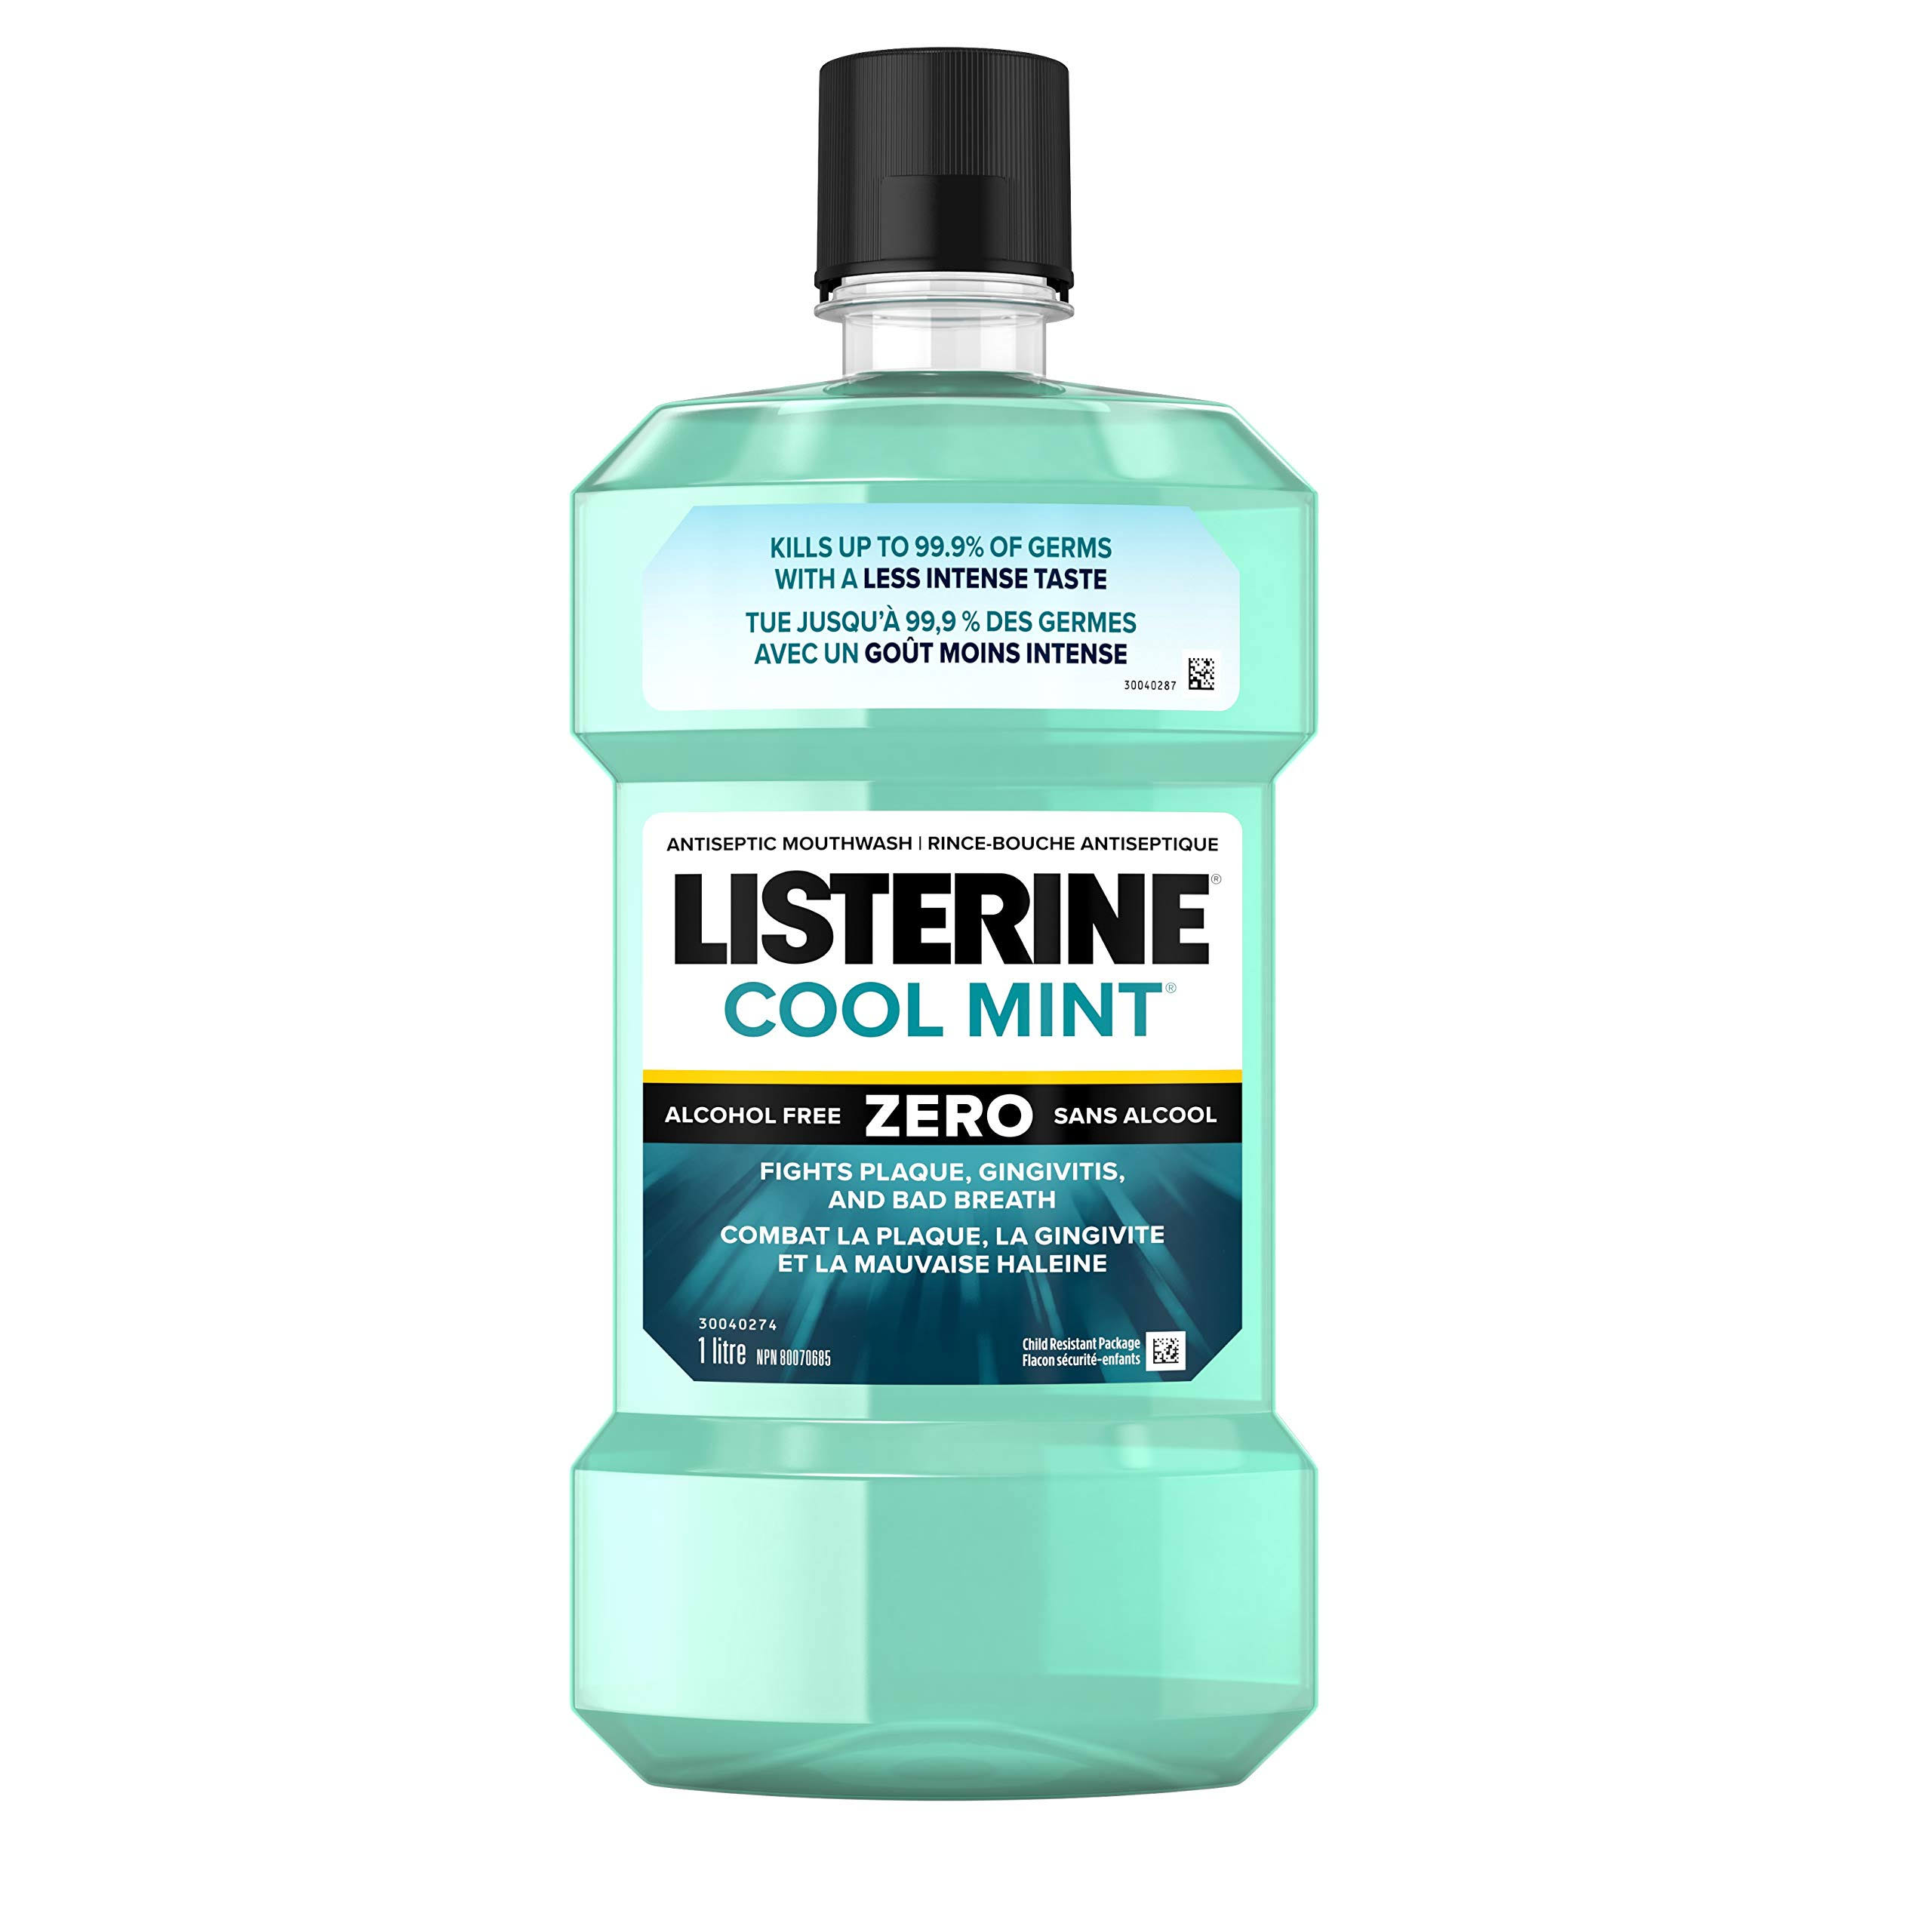 Listerine Zero Mouthwash - Mild Mint, 1L